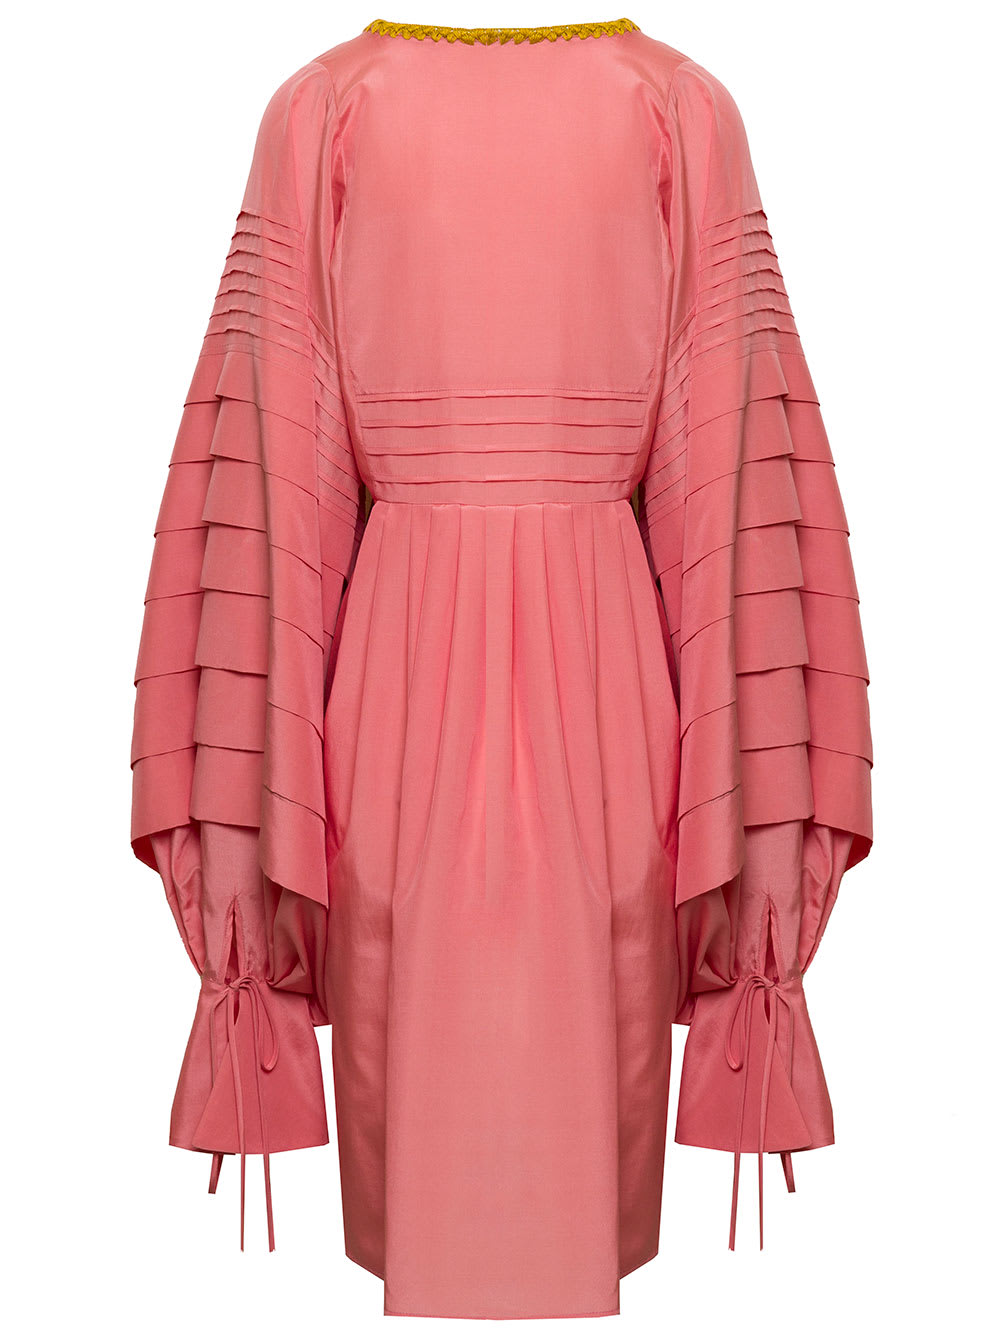 Shop Mario Dice Womans Pink Cotton Blend Dress